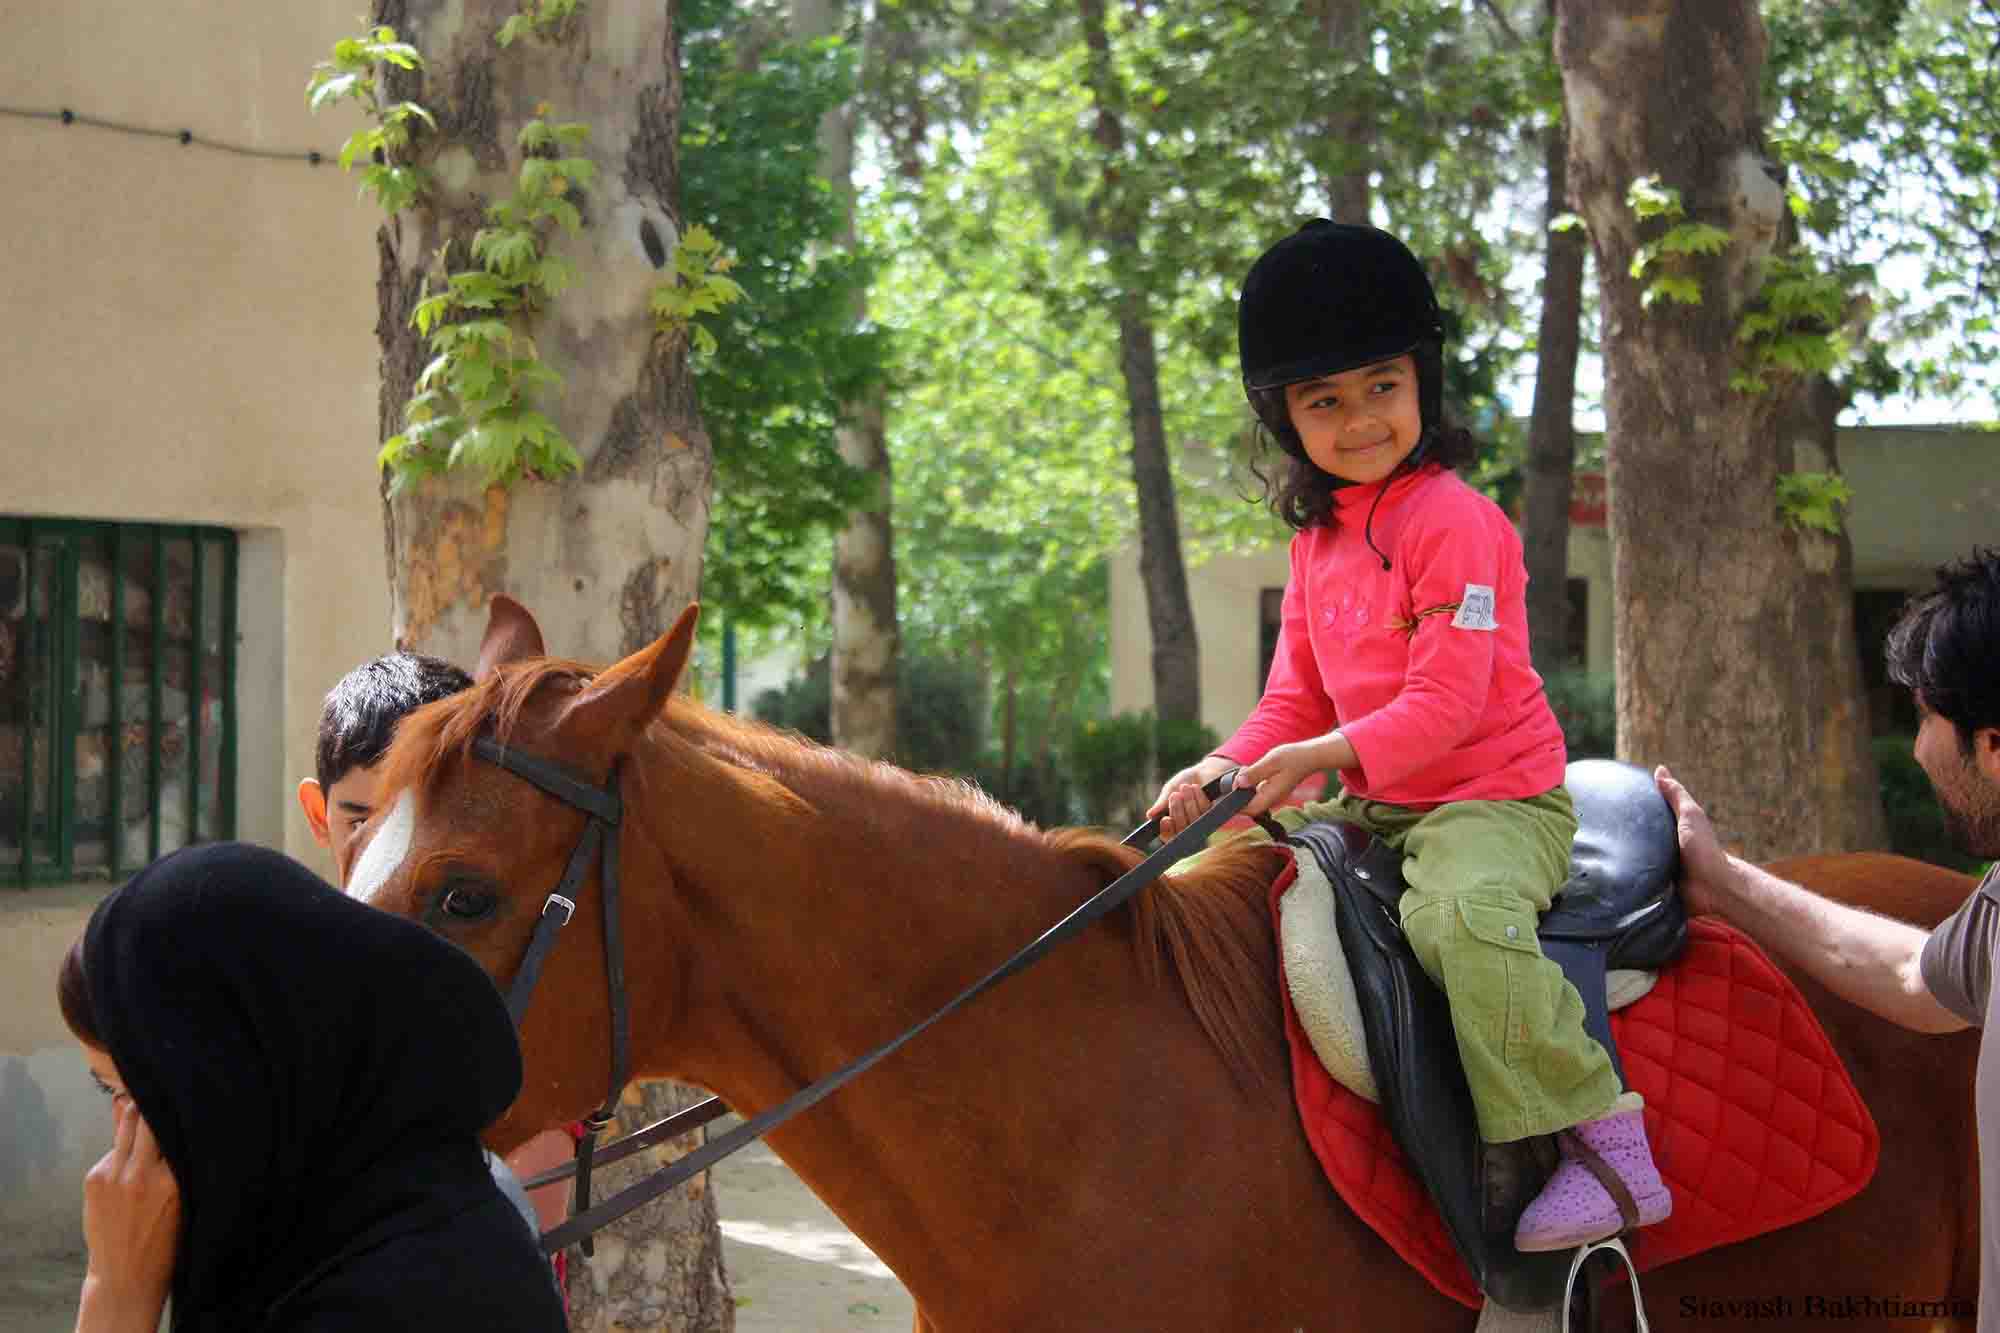 سوارکاری کودکان و اعتماد به نفس آنها | باشگاه اسب سواری ماهان